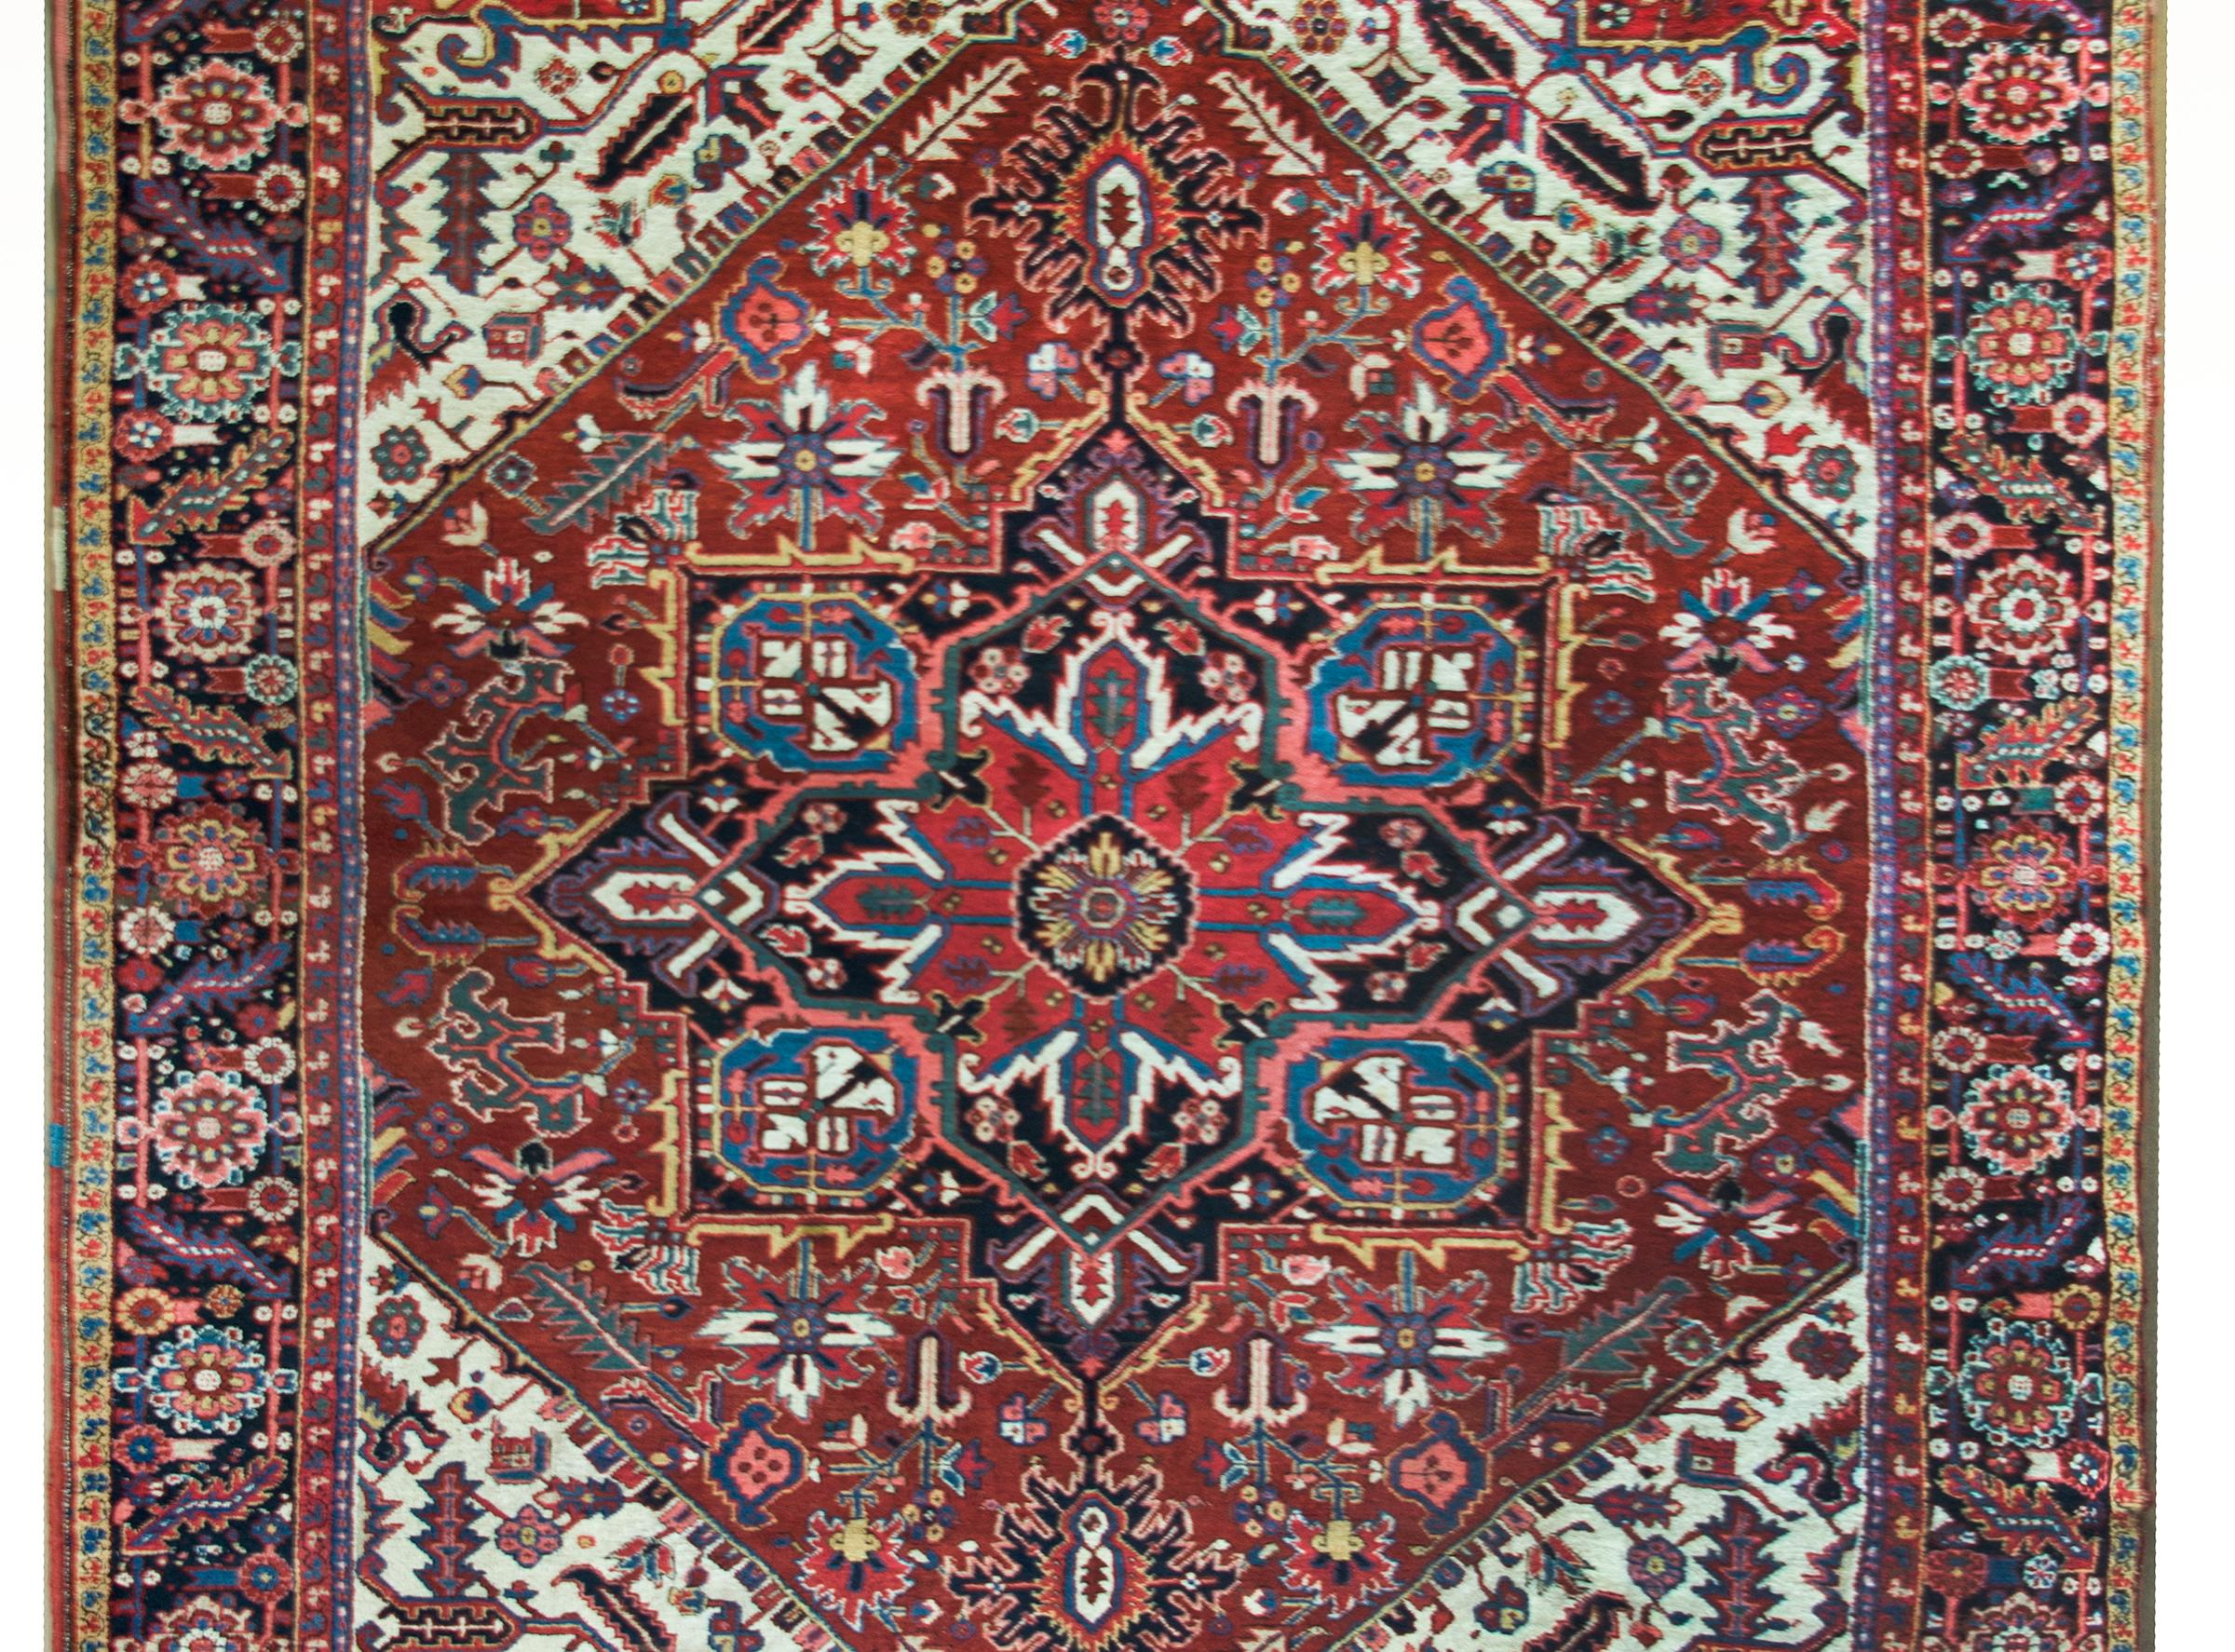 Ein atemberaubender persischer Heriz-Teppich aus dem frühen 20. Jahrhundert mit einem großen zentralen Blumenmedaillon inmitten eines Feldes mit weiteren Blumen und Ranken, umgeben von einer komplexen Bordüre mit einem großflächigen, sich